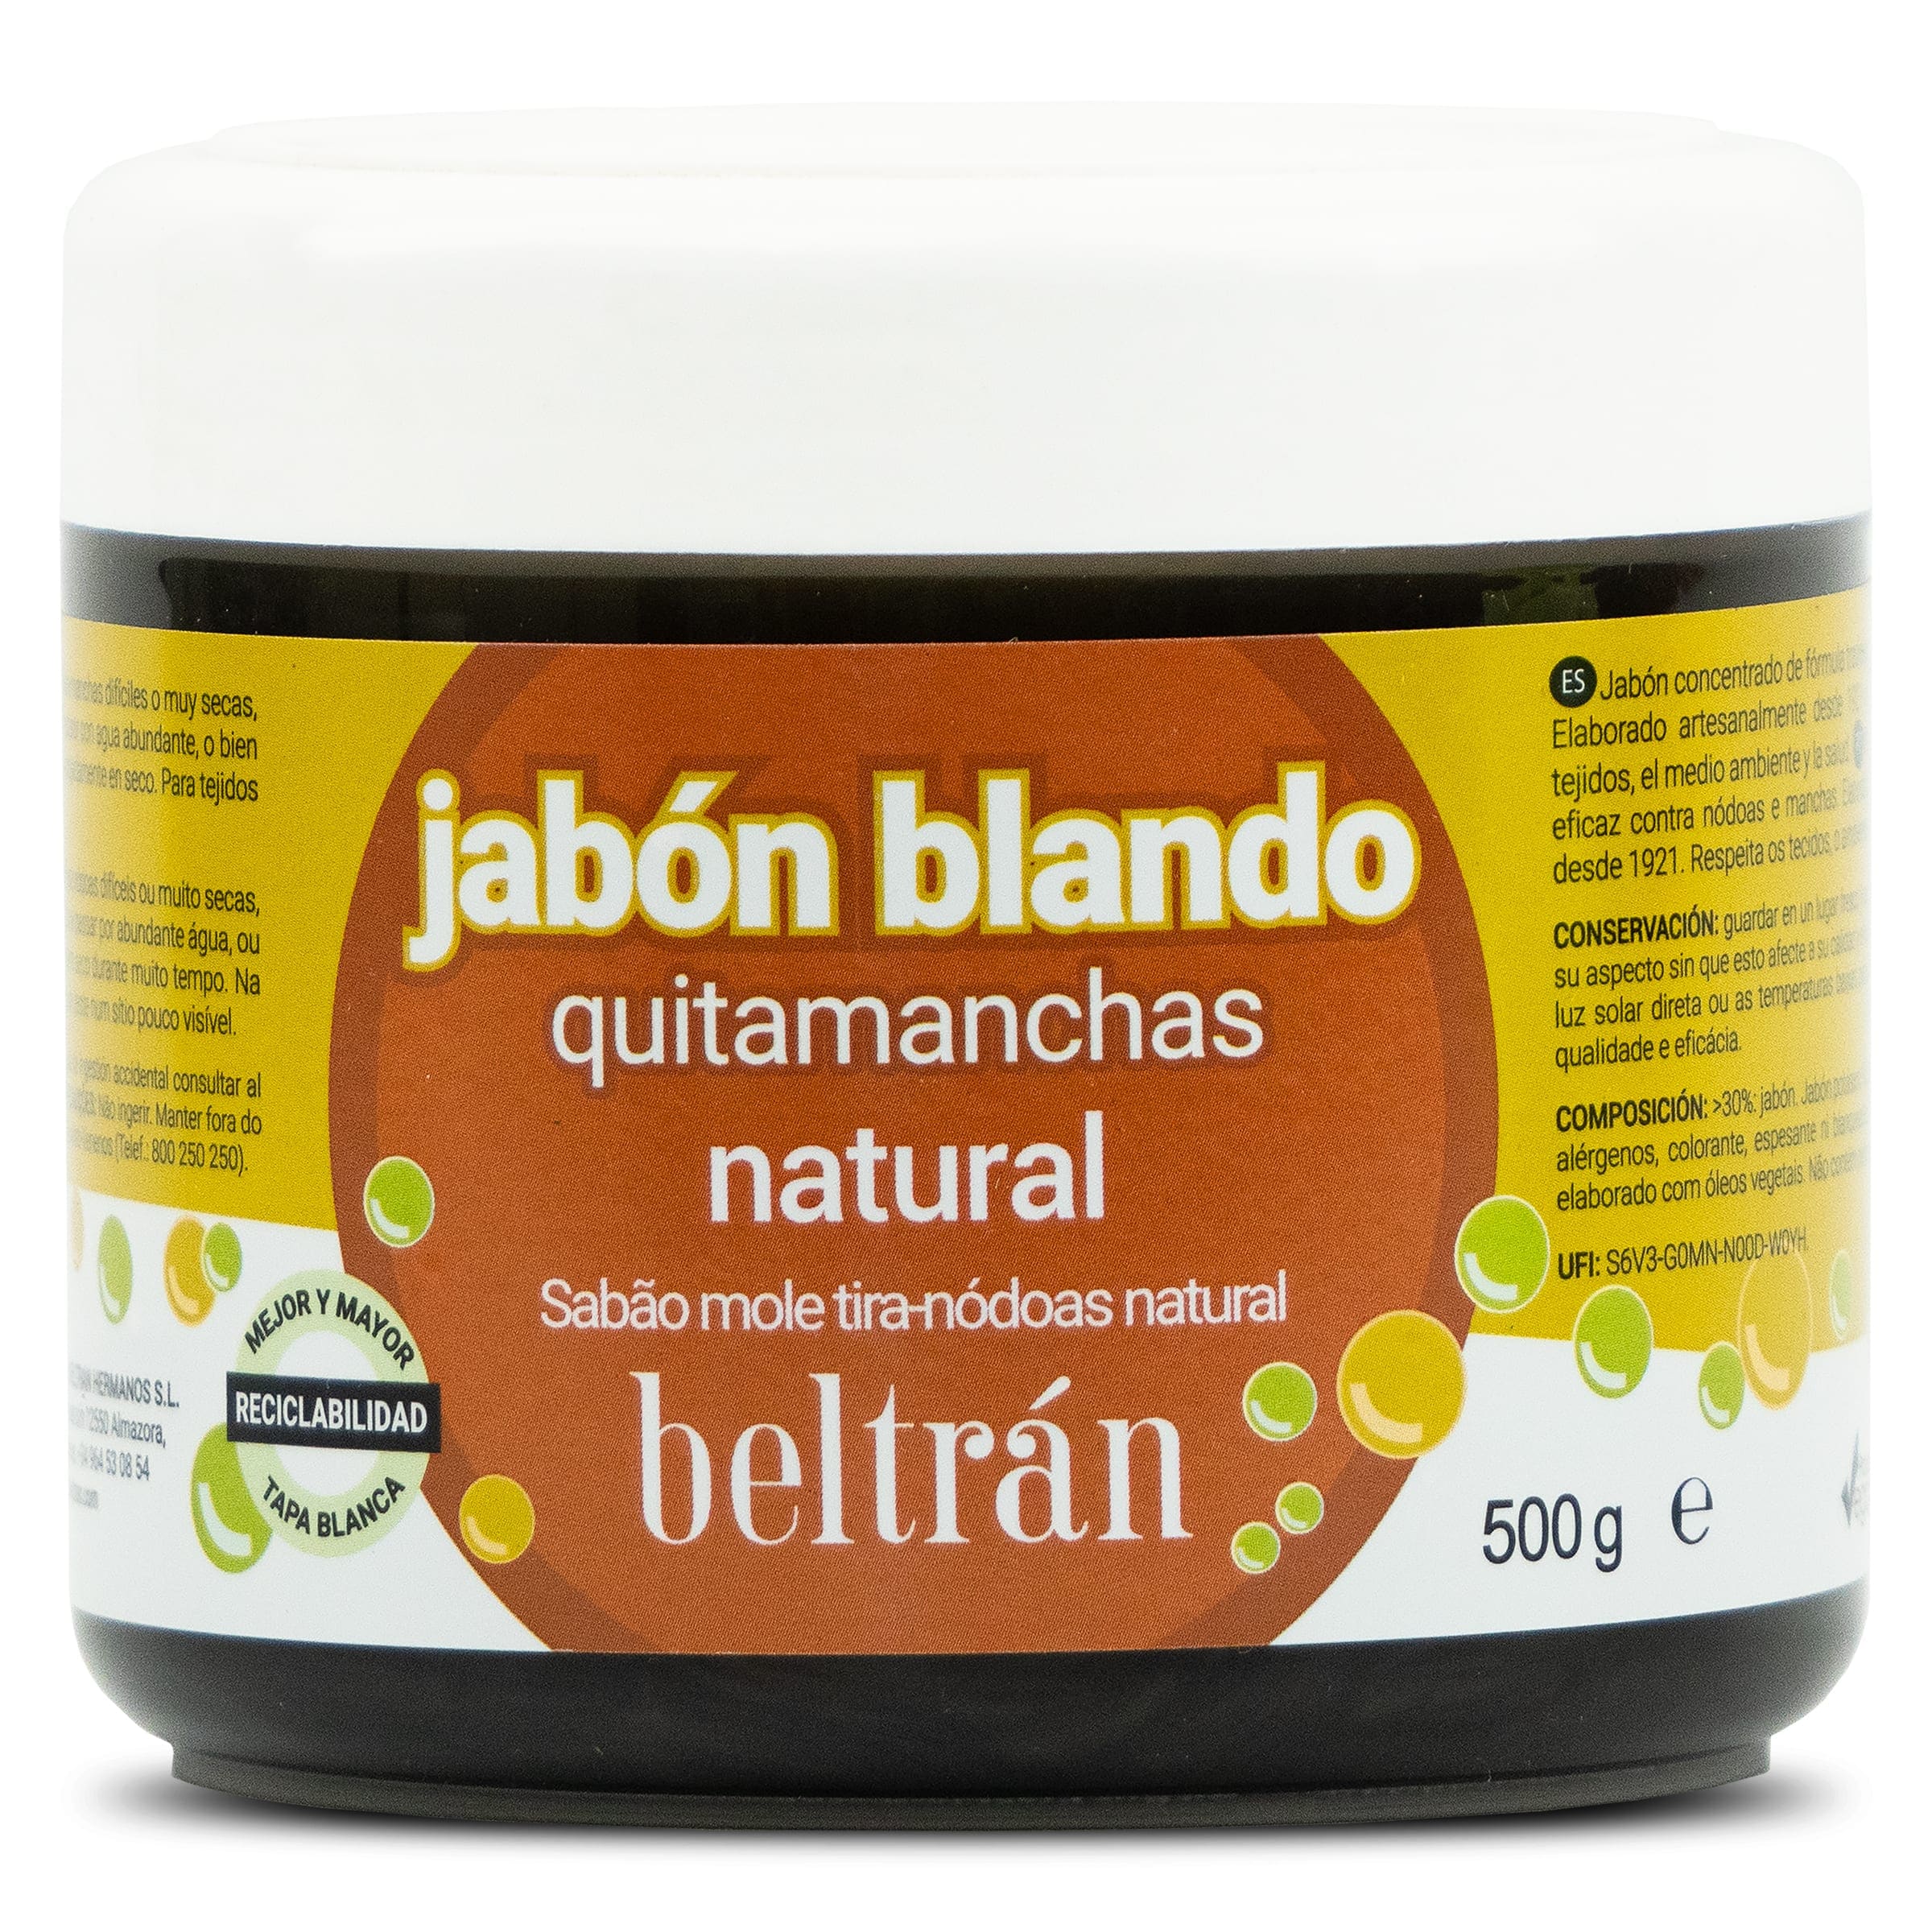 Jabón blando quitamanchas natural Beltrán bote 500 g - Supermercados DIA